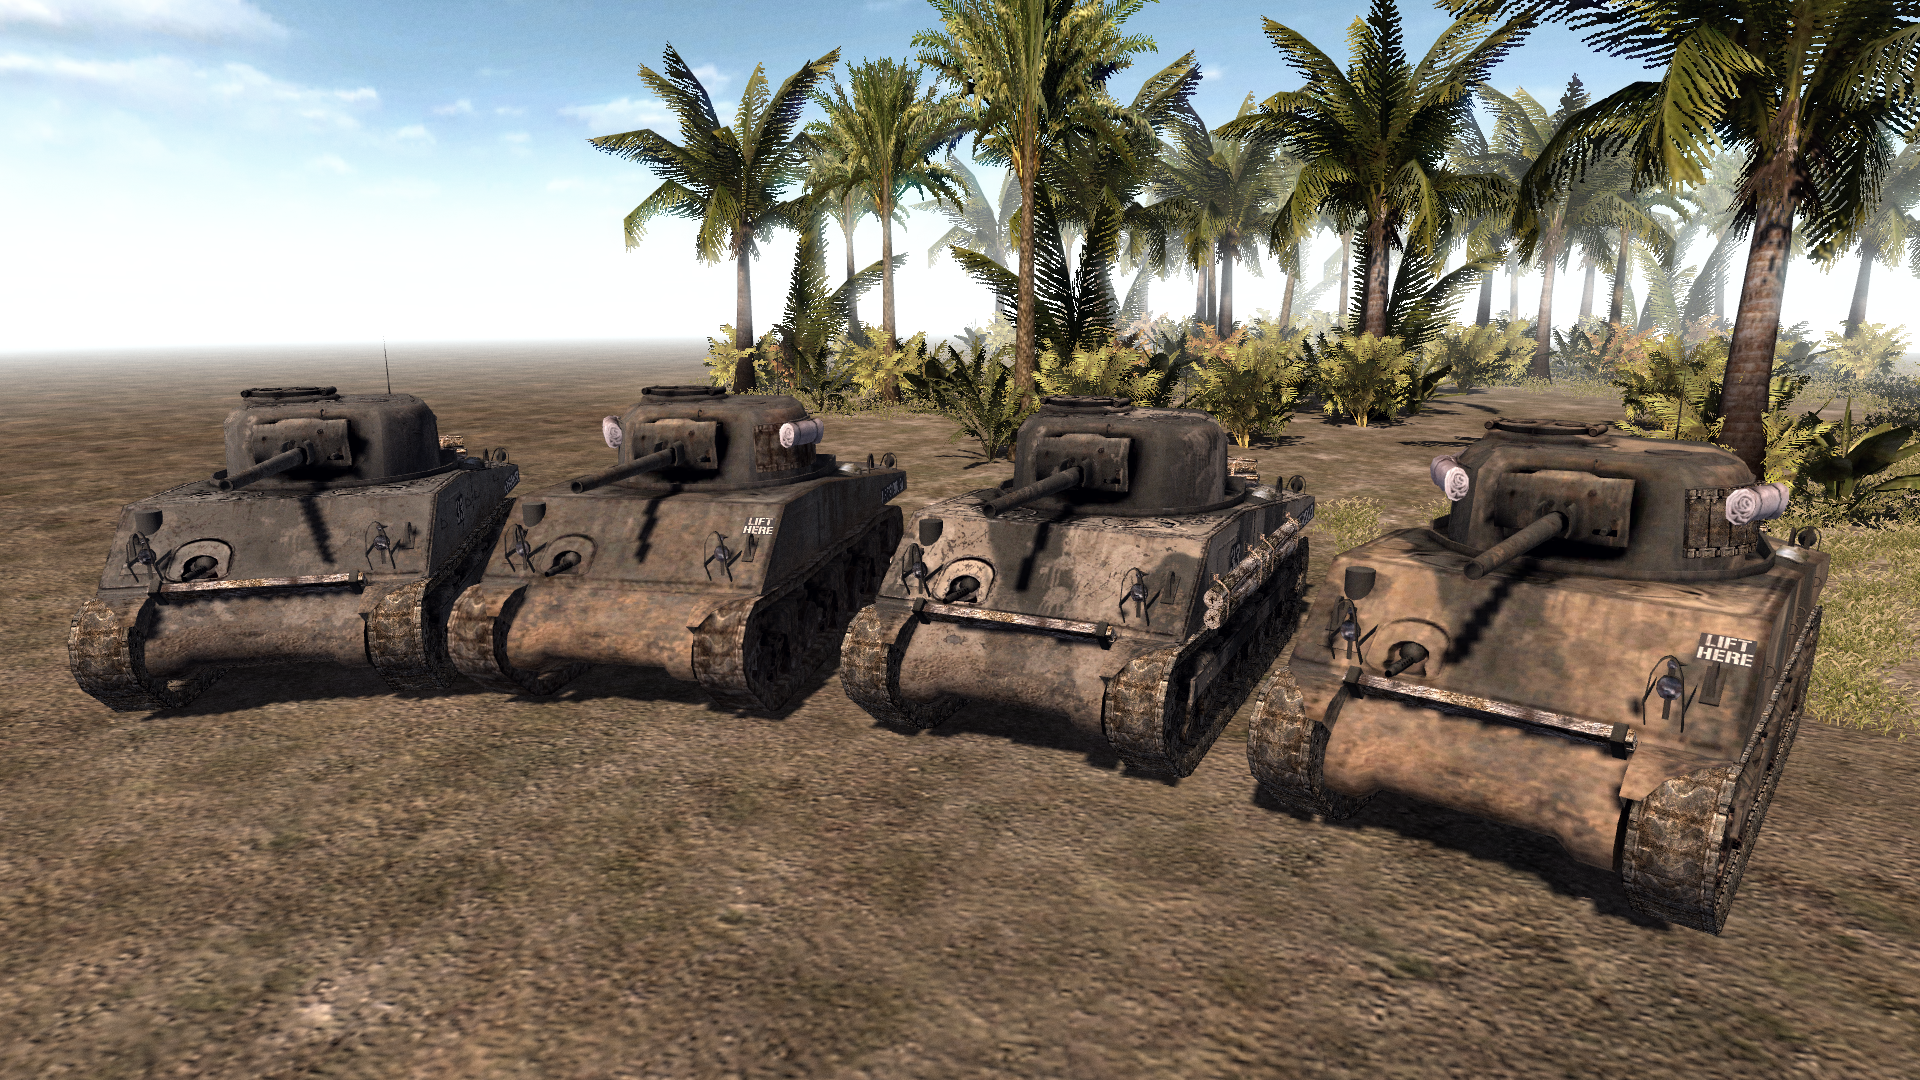 battle tanks 2 global assualt